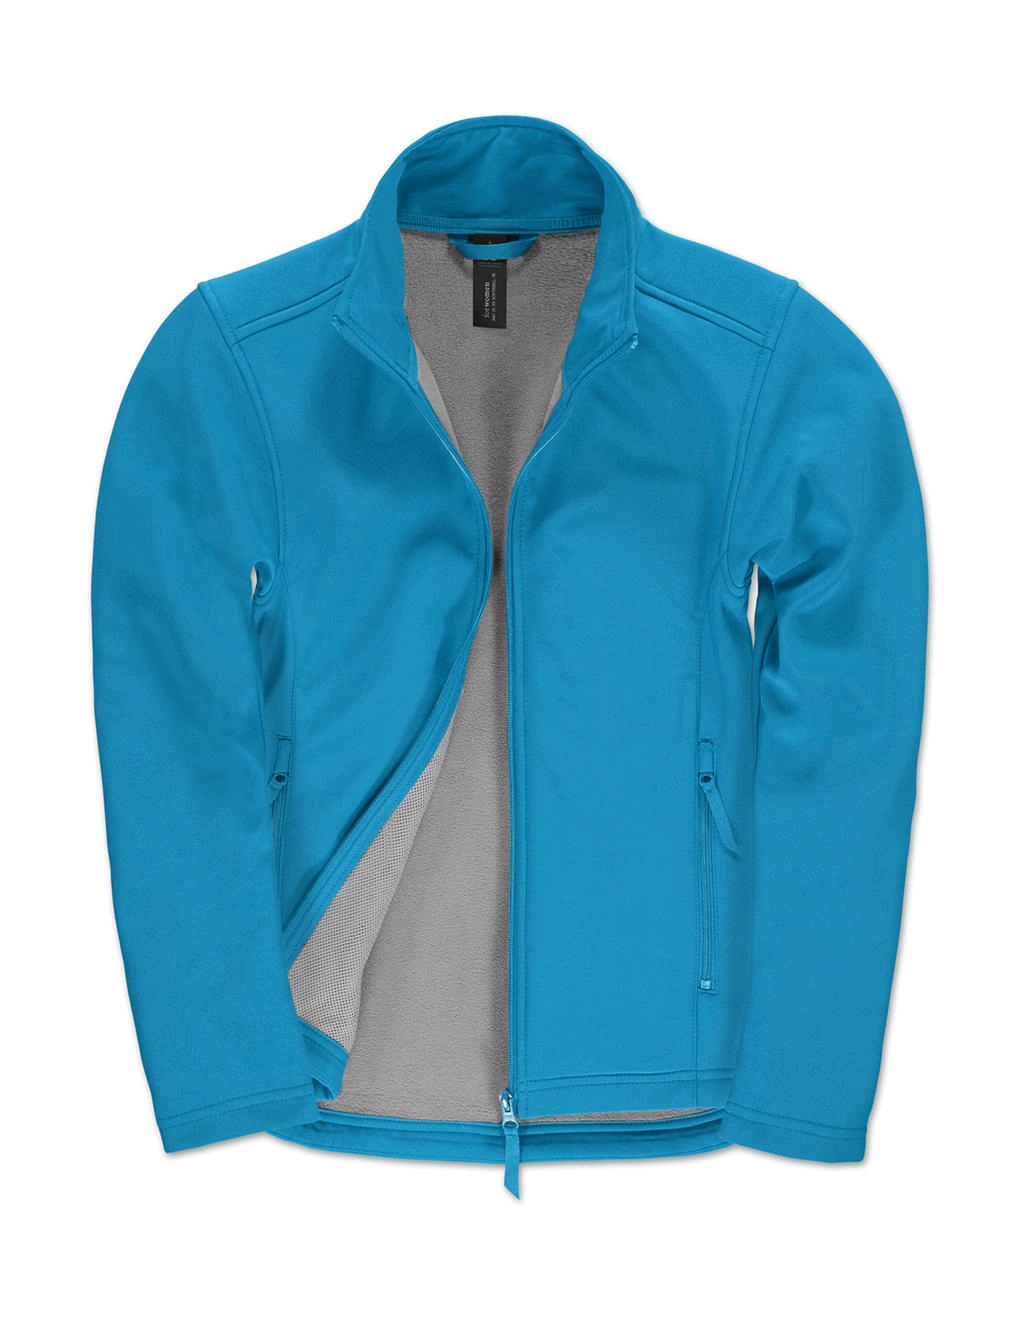 ID.701/women Softshell Jacket  zum Besticken und Bedrucken in der Farbe Atoll/Attitude Grey mit Ihren Logo, Schriftzug oder Motiv.